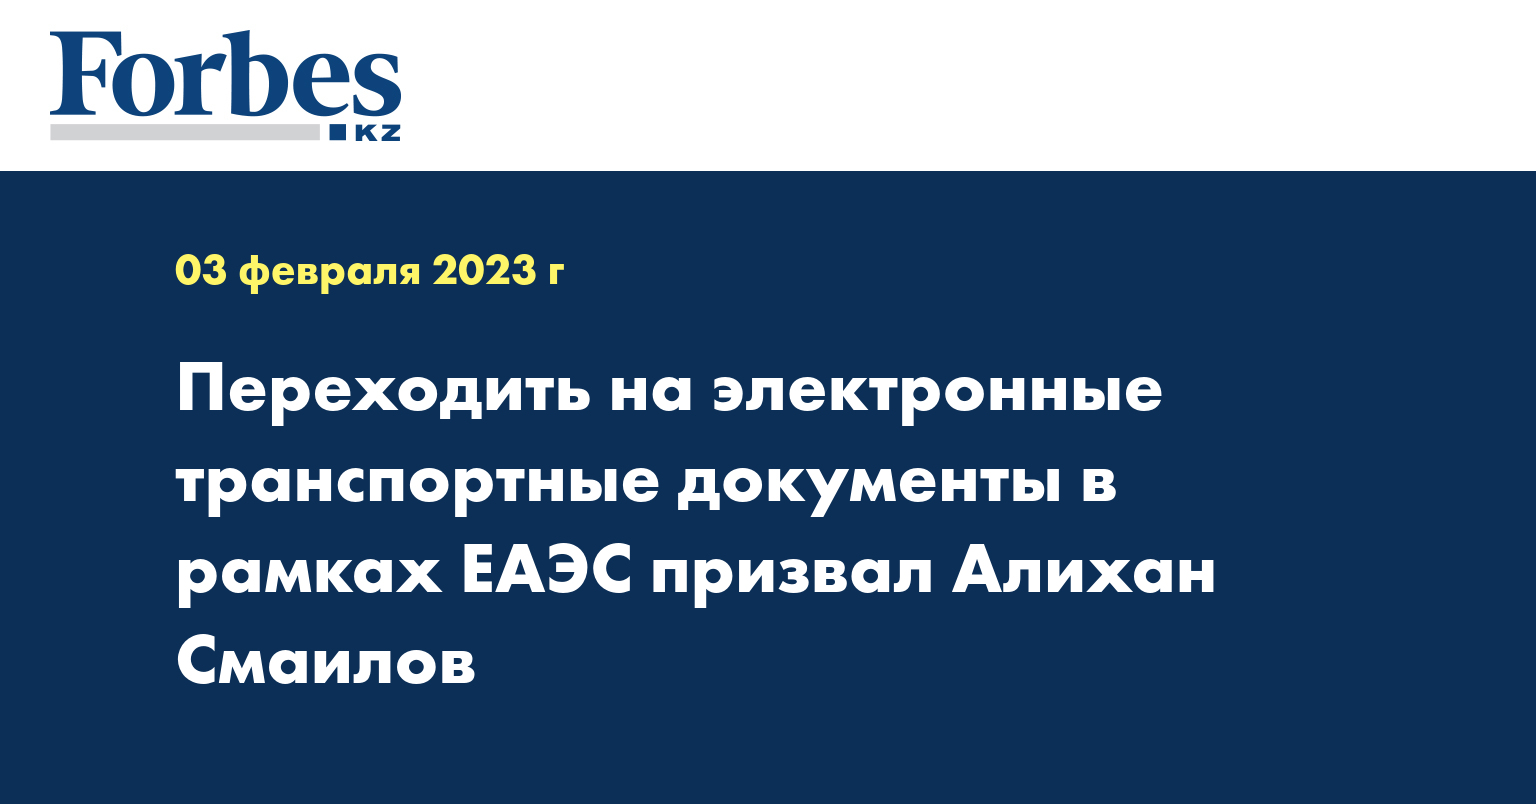 Переходить на электронные транспортные документы в рамках ЕАЭС призвал Алихан Смаилов